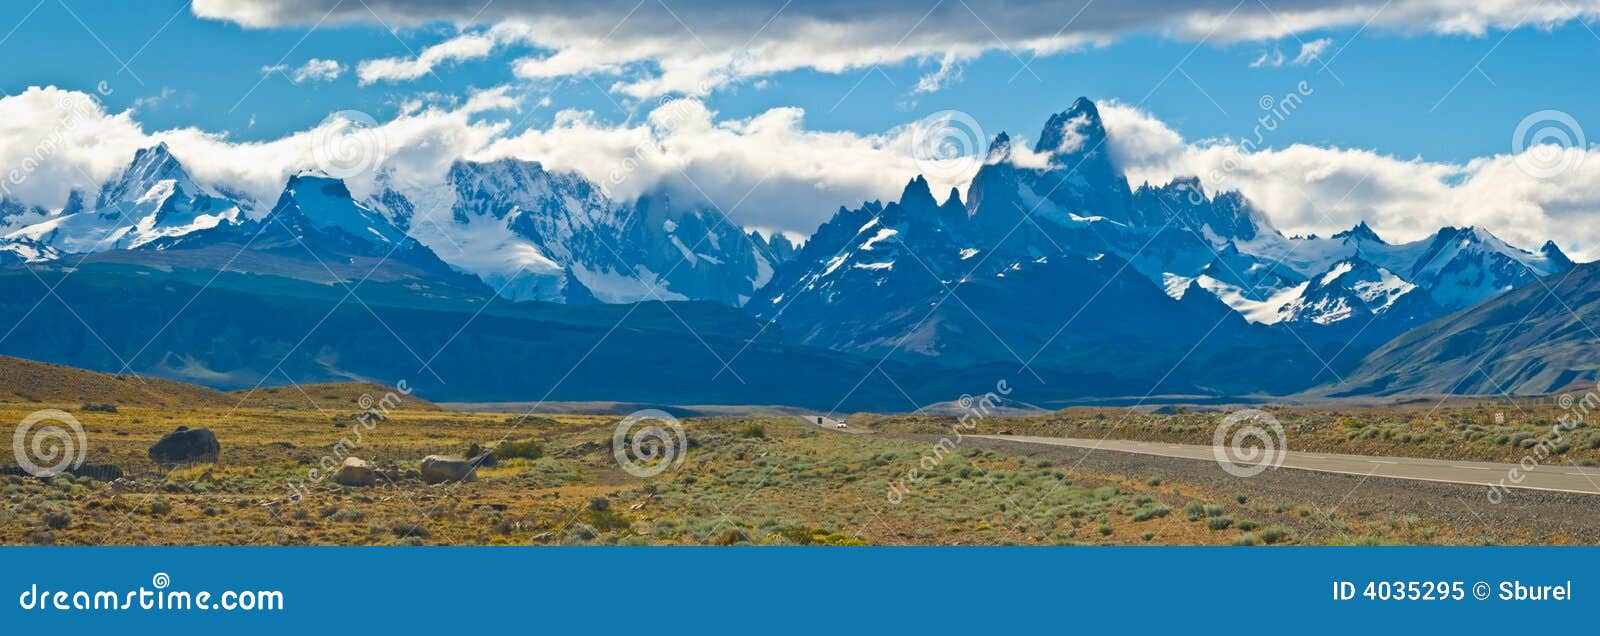 mount fitz roy, los glaciares np, argentina